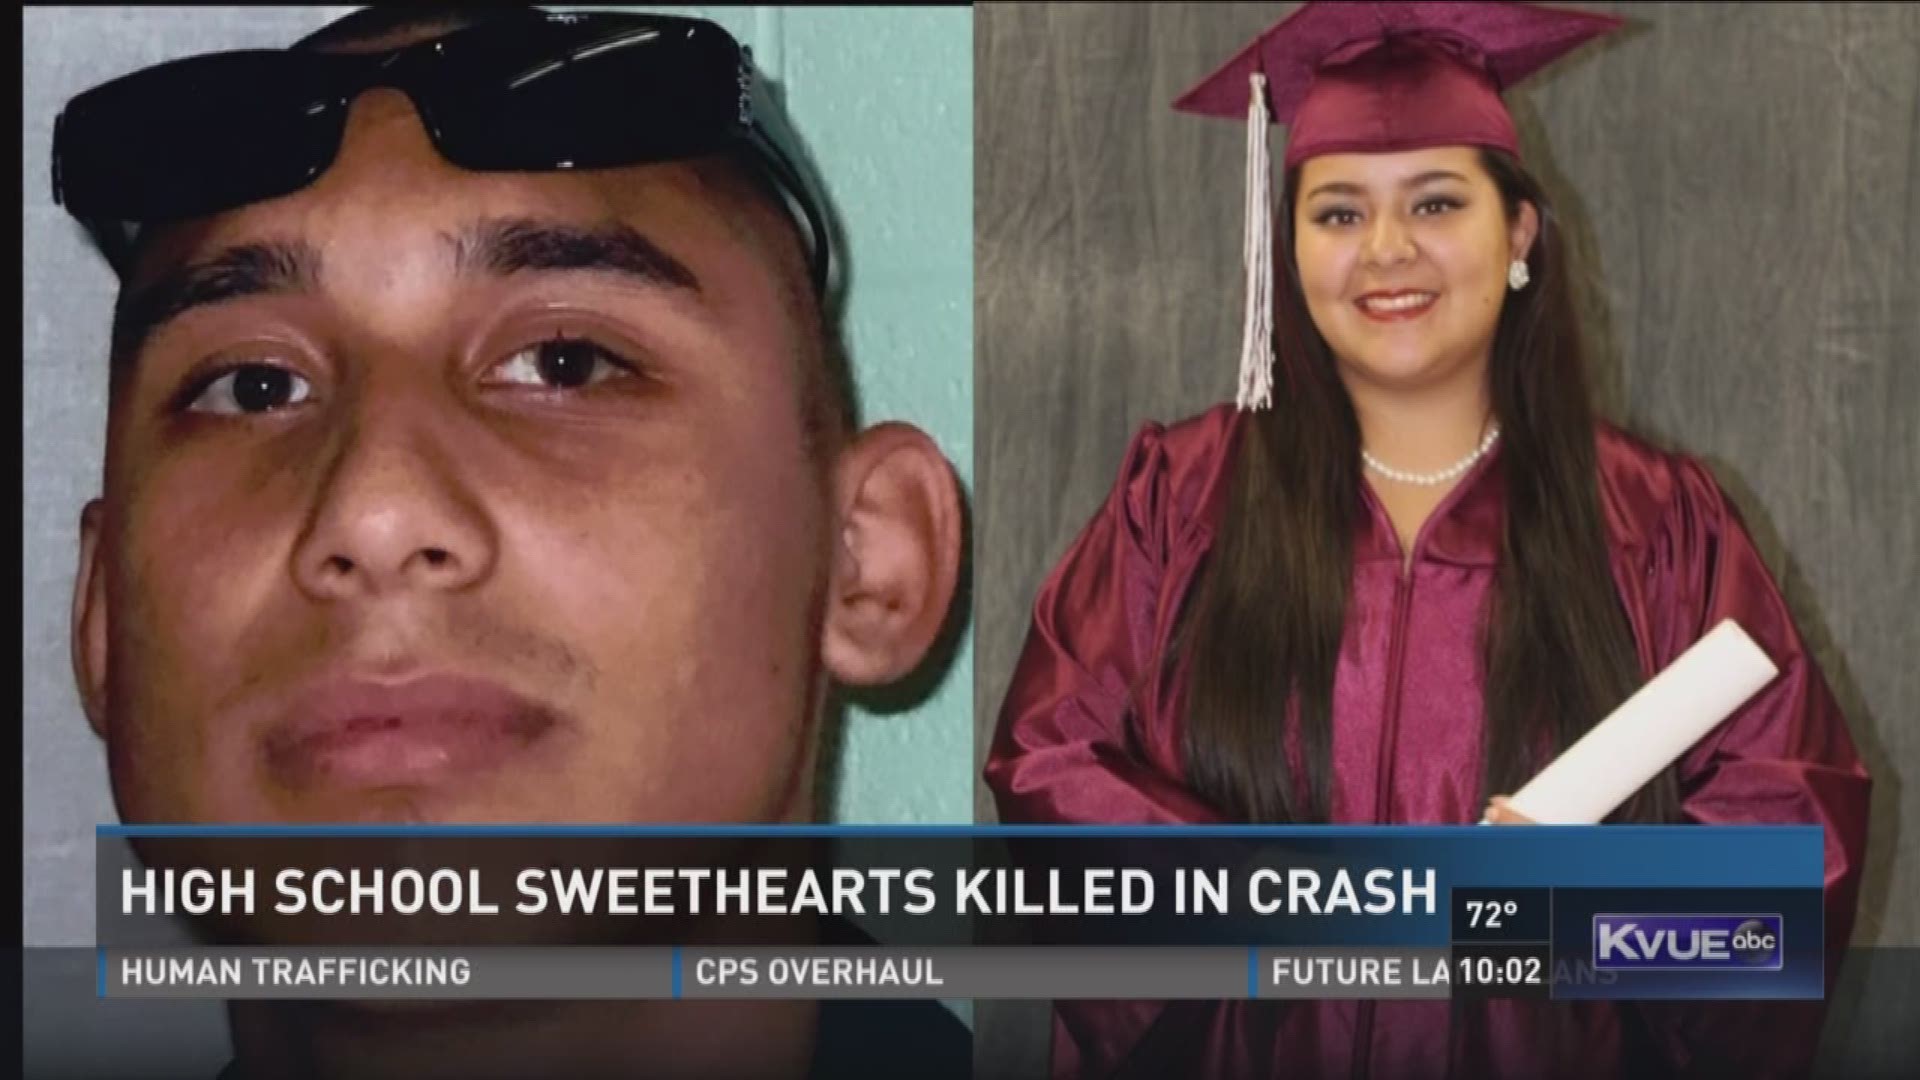 High school sweethearts killed in crash